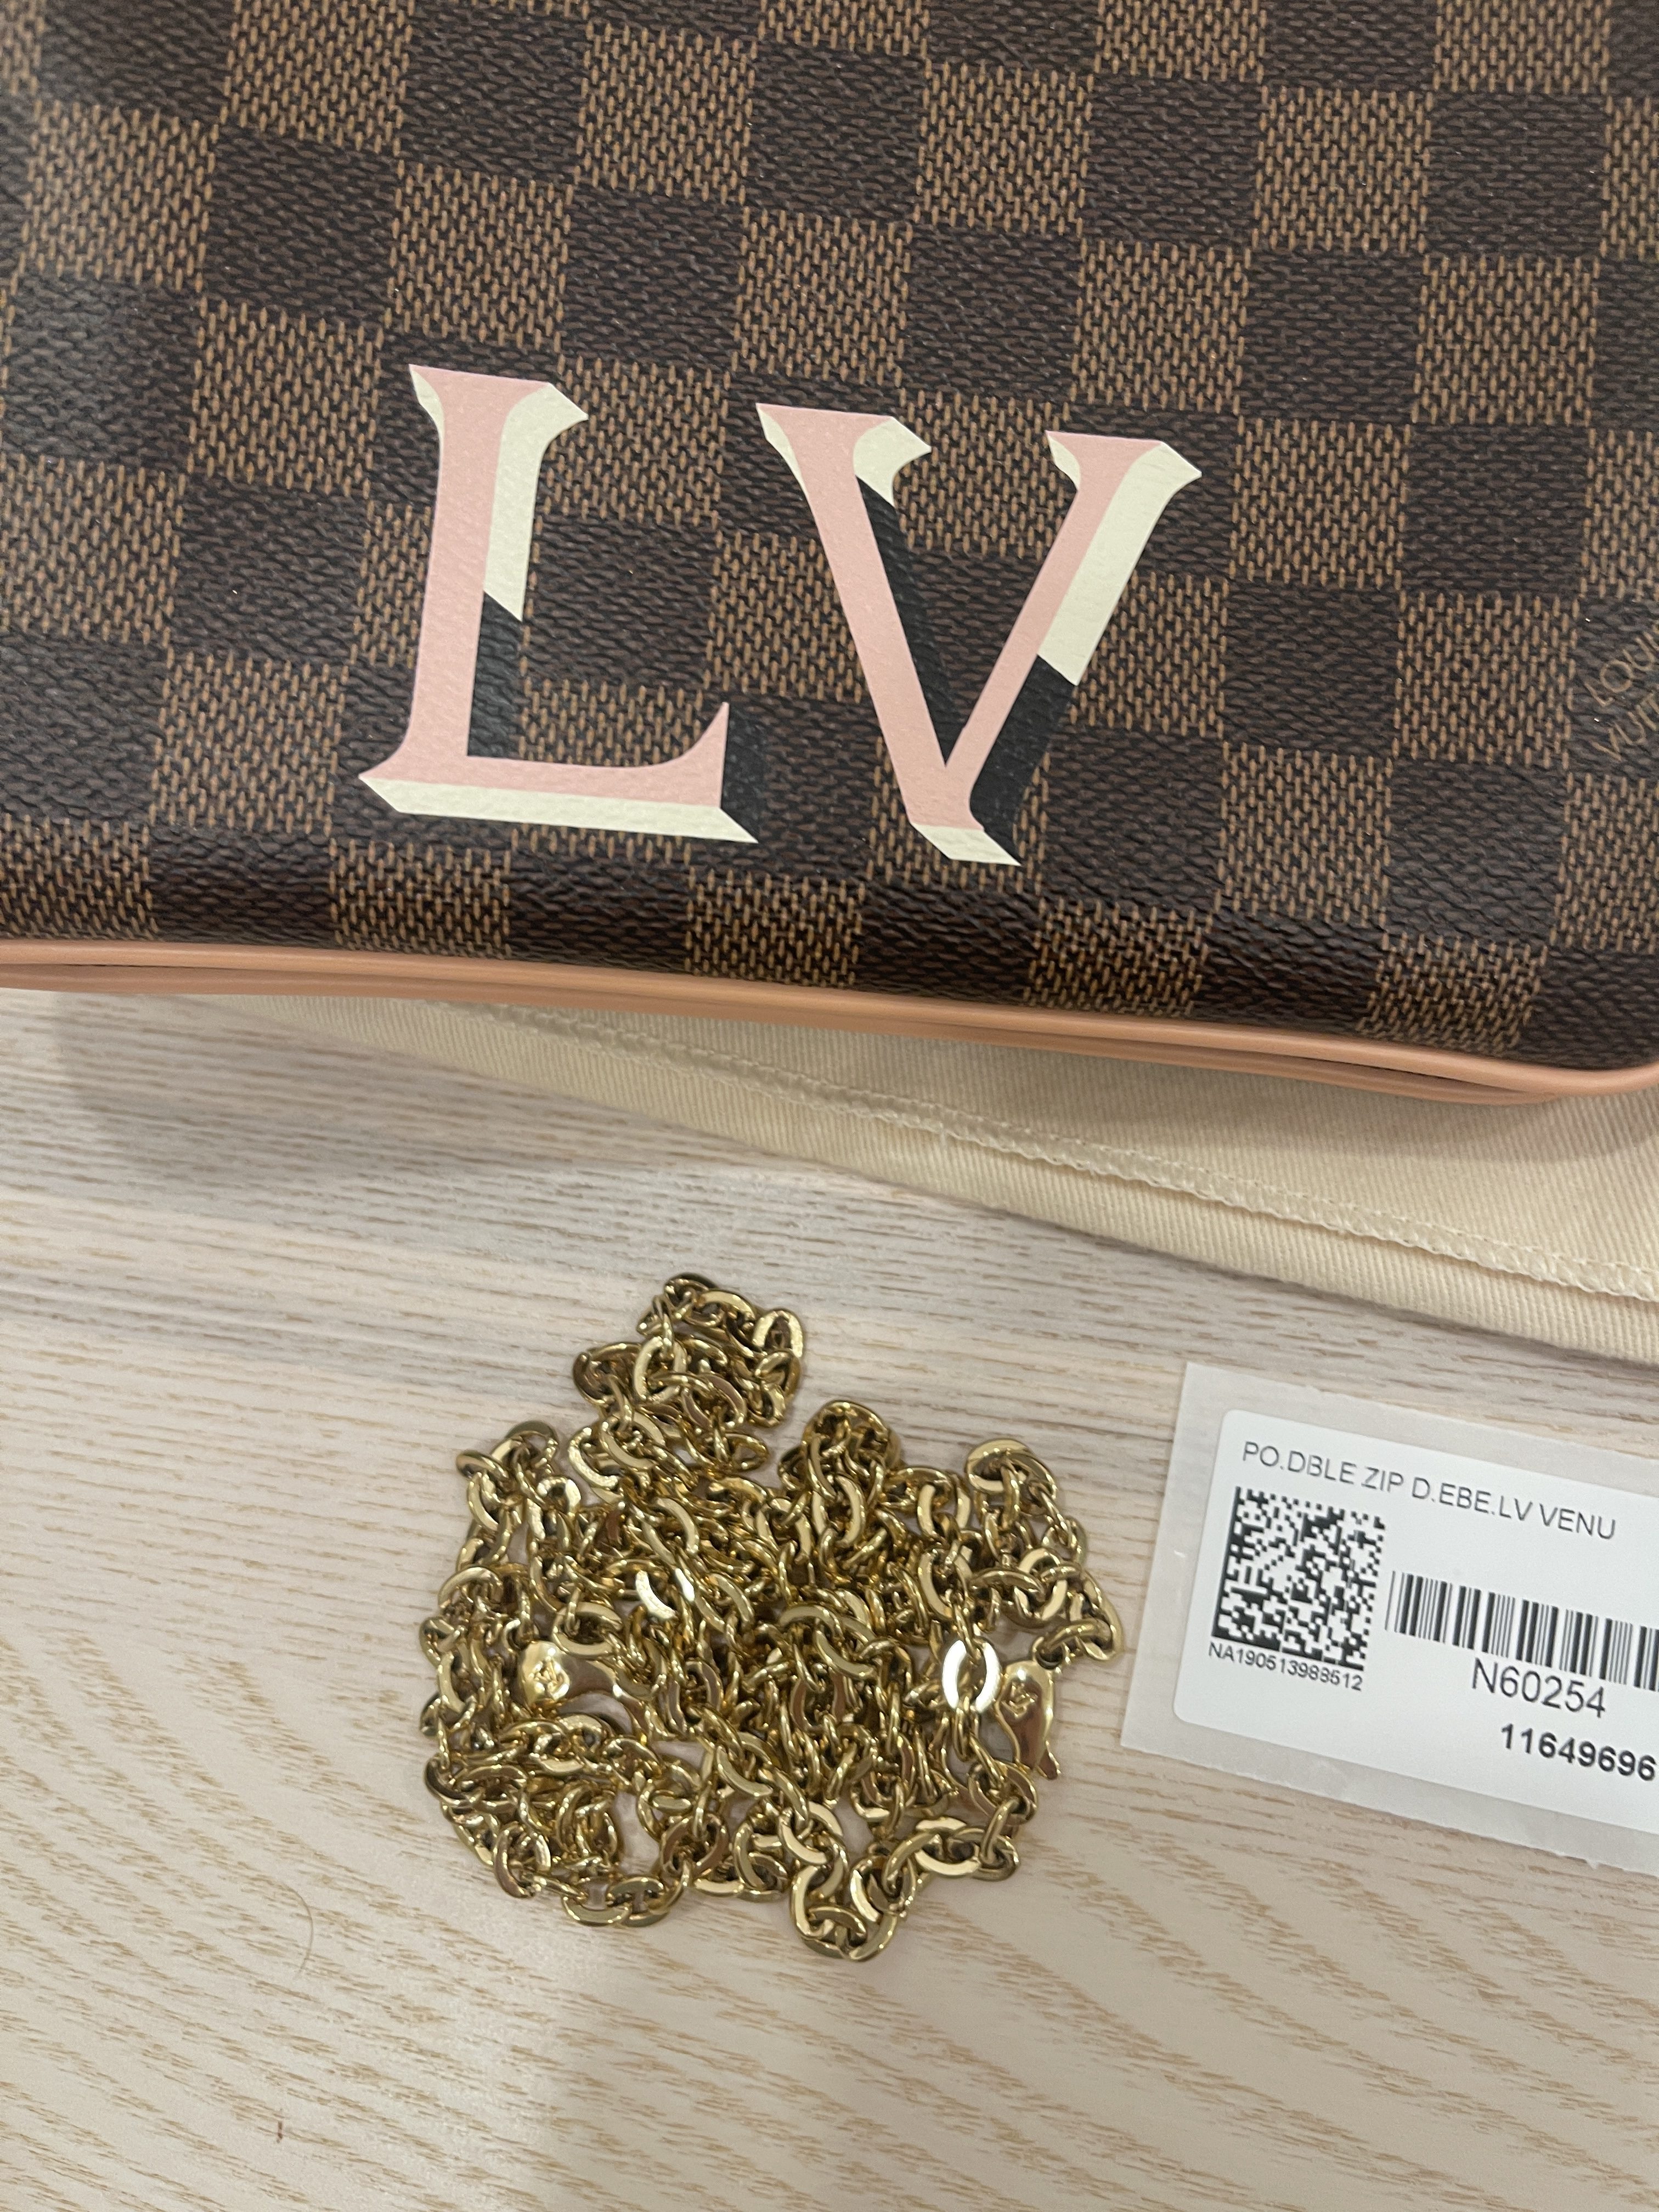 Shop Louis Vuitton DAMIER Double zip pochette (N60254) by nordsud